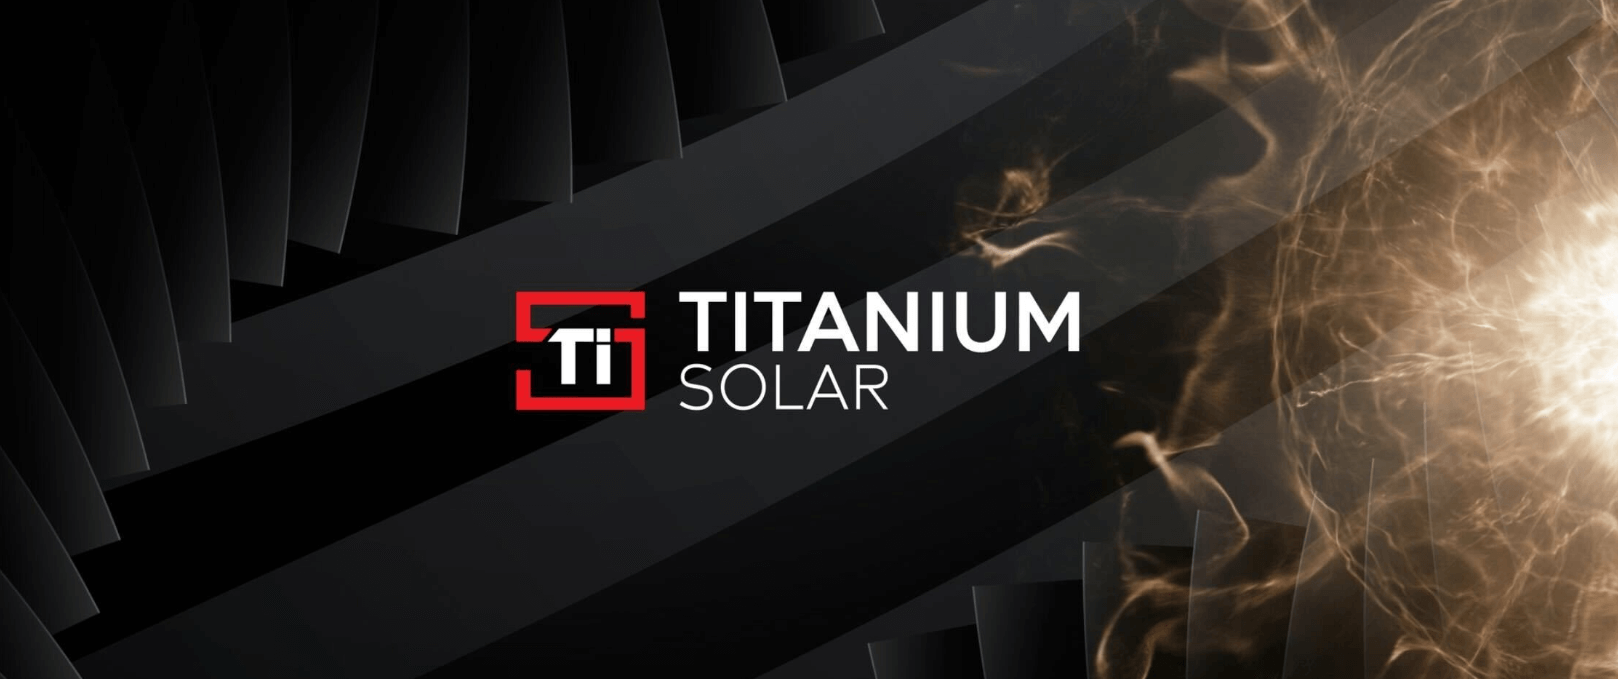 Titanium Solar Mission Statement